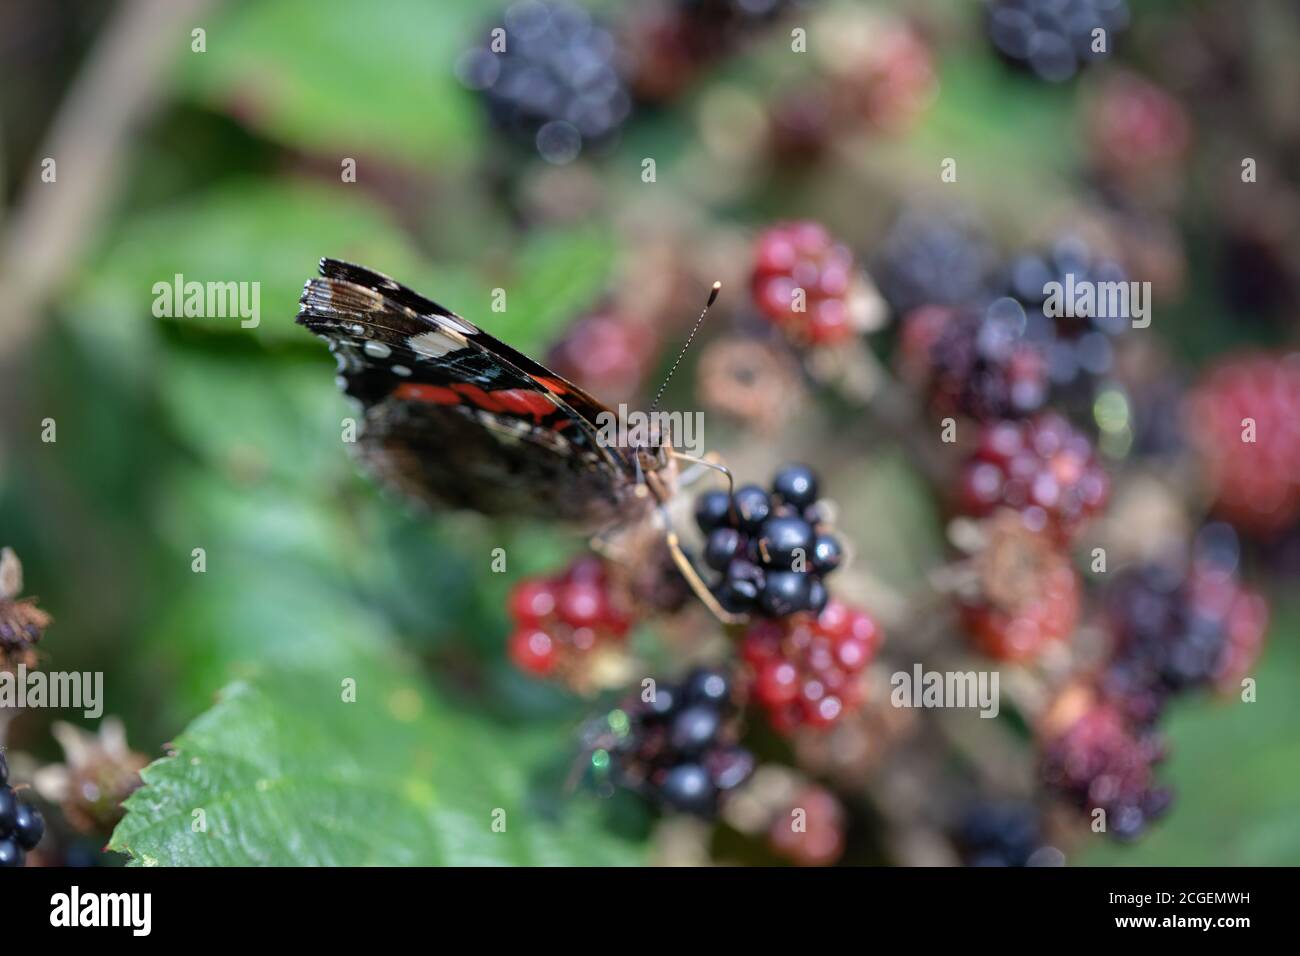 Schmetterling des roten Admirals (Vanessa atalanta). Fütterung von überreifen Brombeeren (Rubus fruticosus), mit teilweise offenen Flügeln. Stockfoto